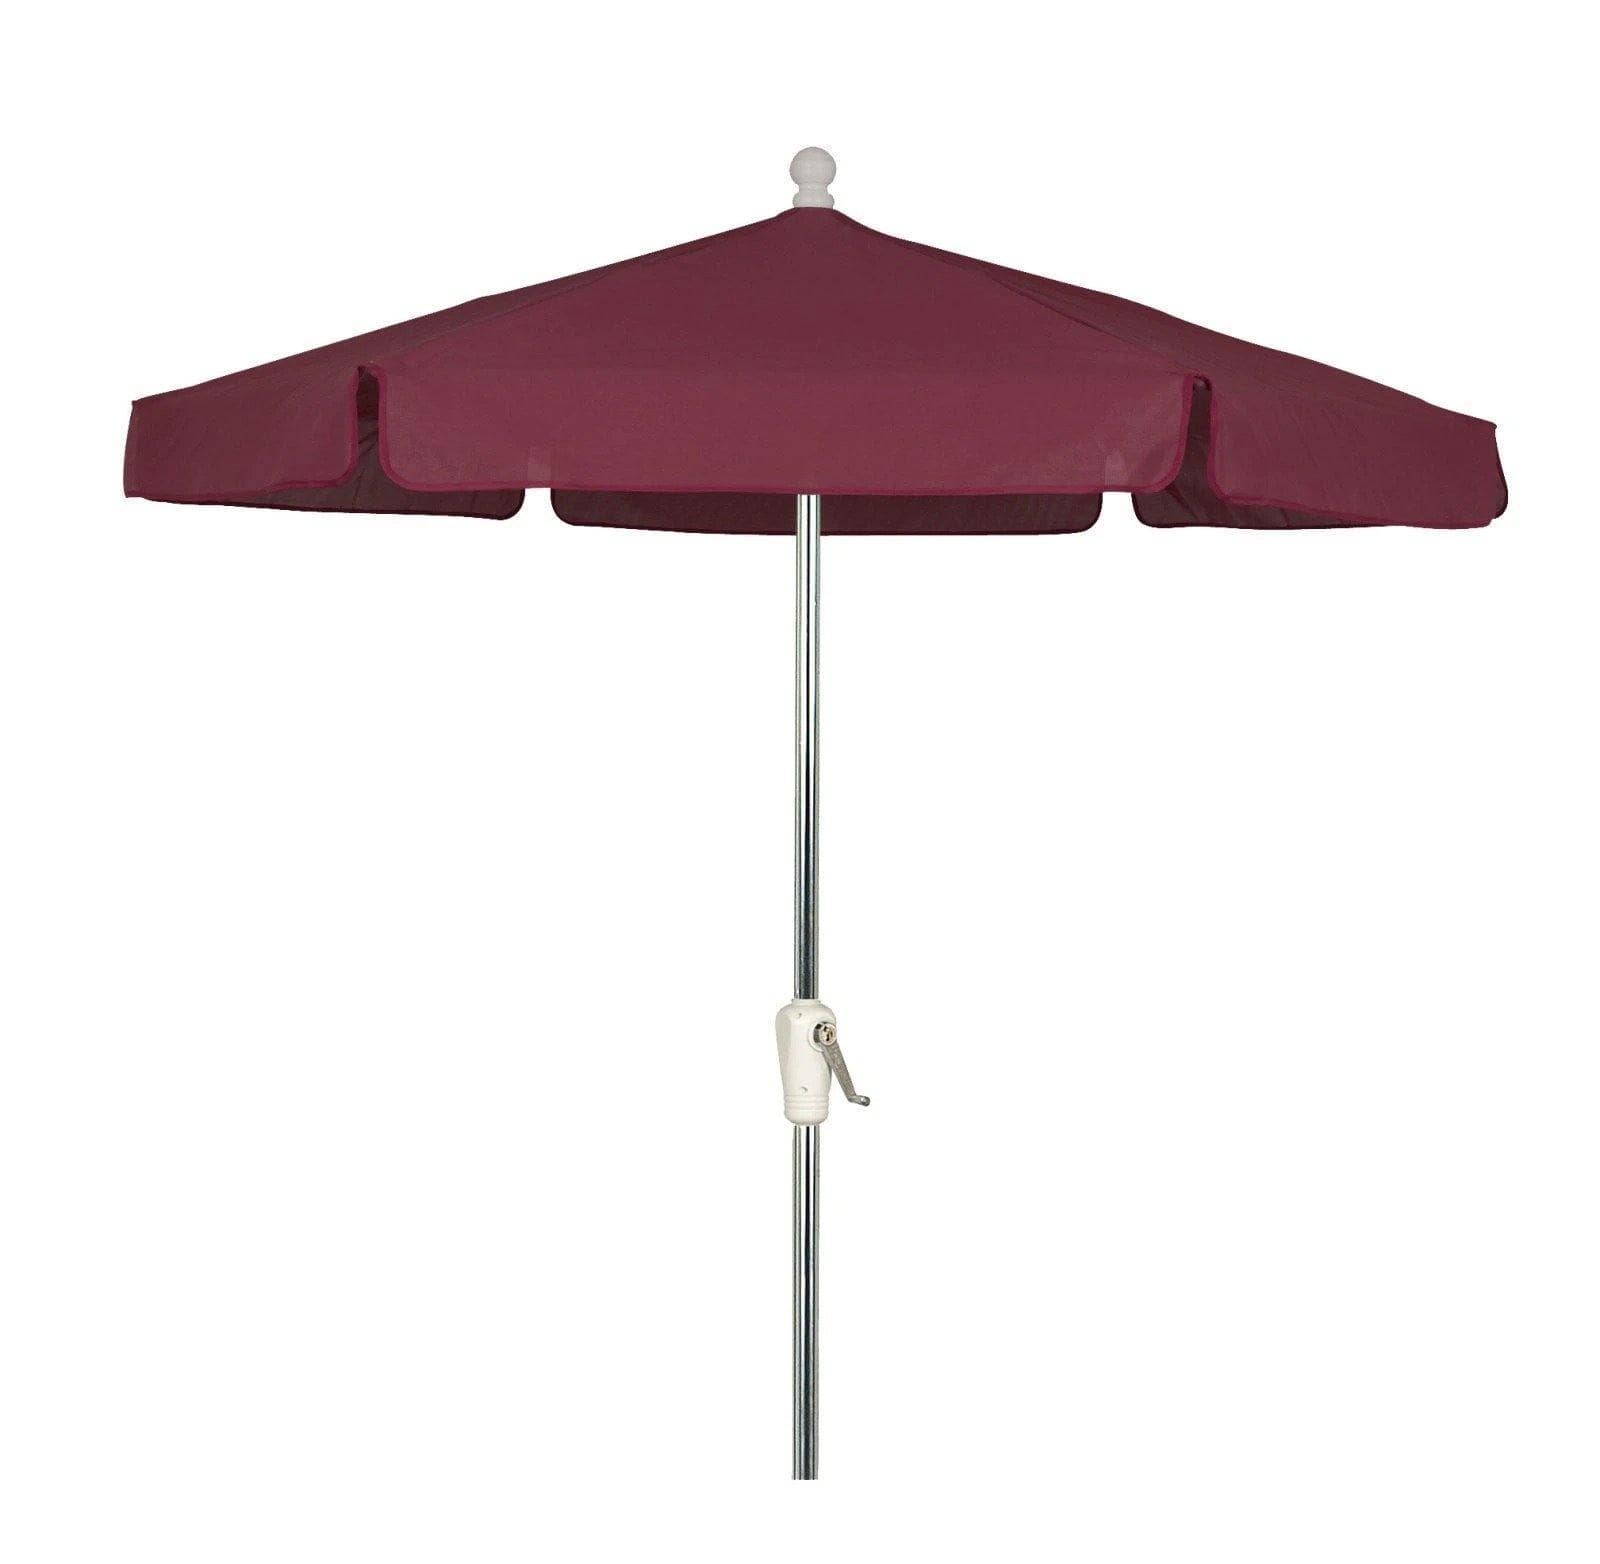 Fiberbuilt Table Umbrellas Burgundy Fiberbuilt 7.5' Garden Umbrella w/ Crank Lift